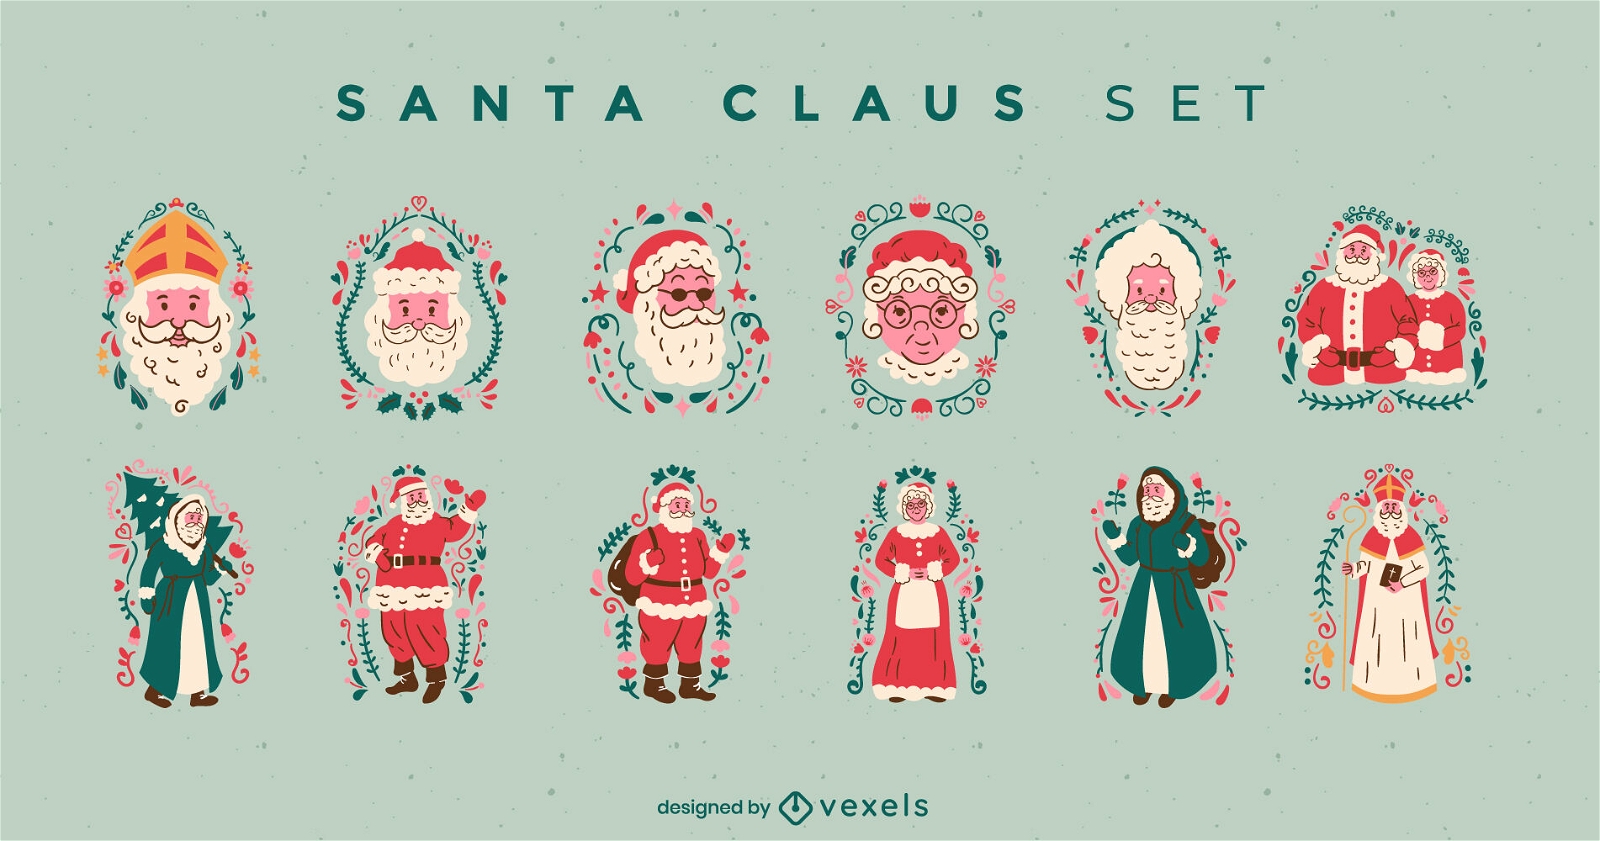 Santa Claus Christmas character set